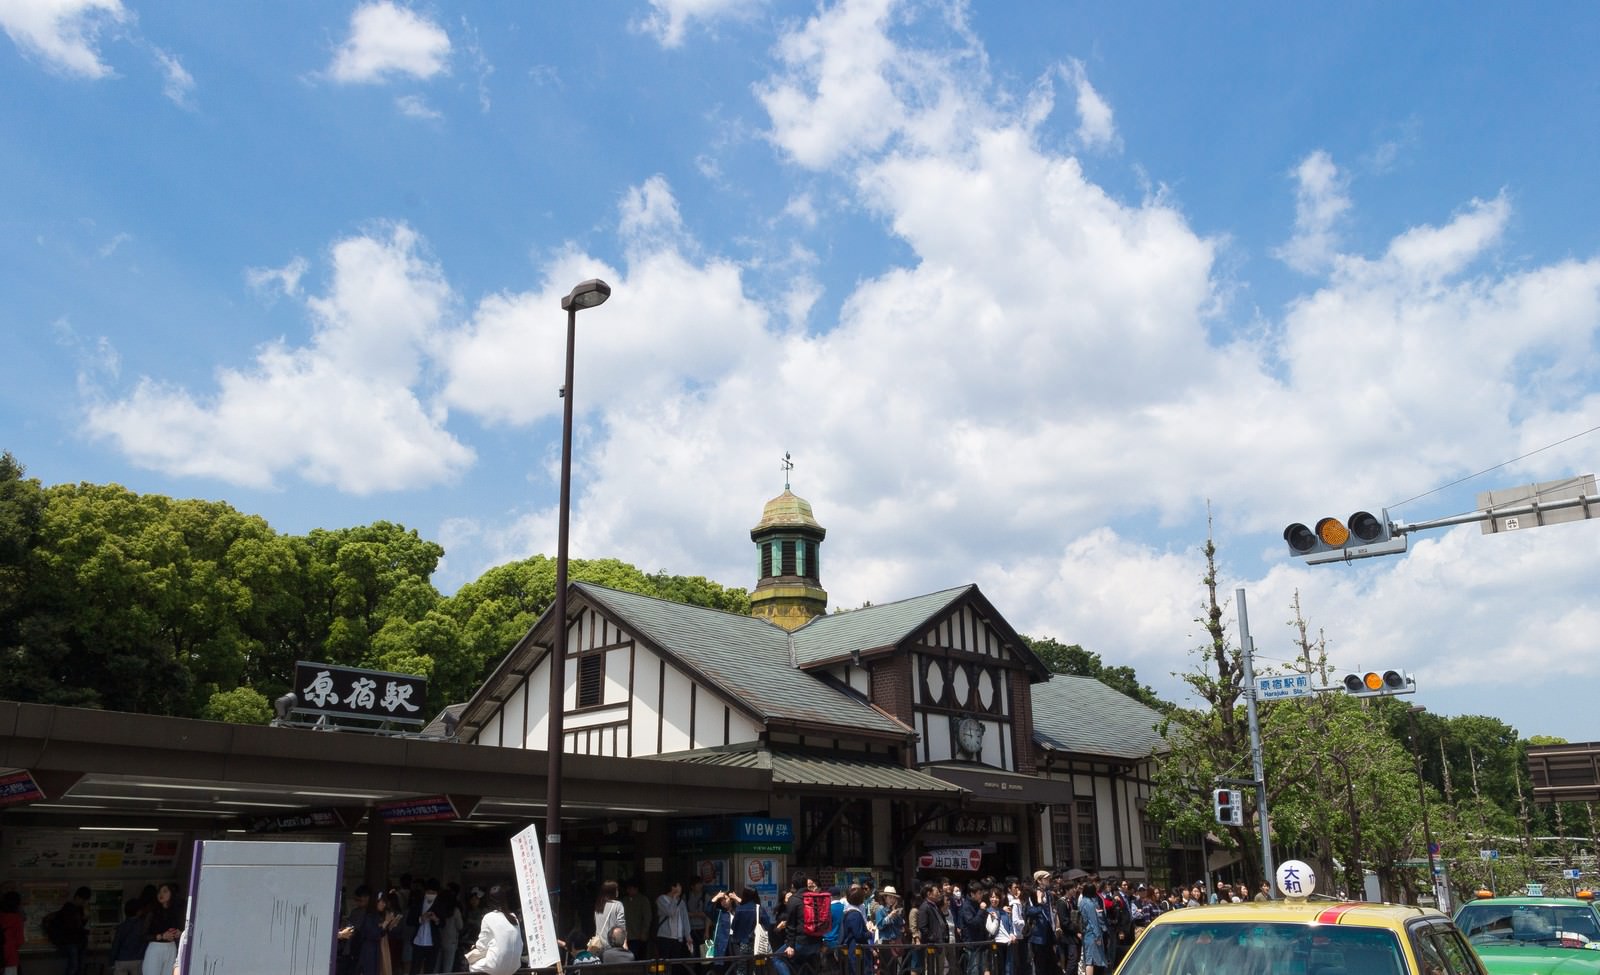 「原宿駅前の人混み | フリー素材のぱくたそ」の写真